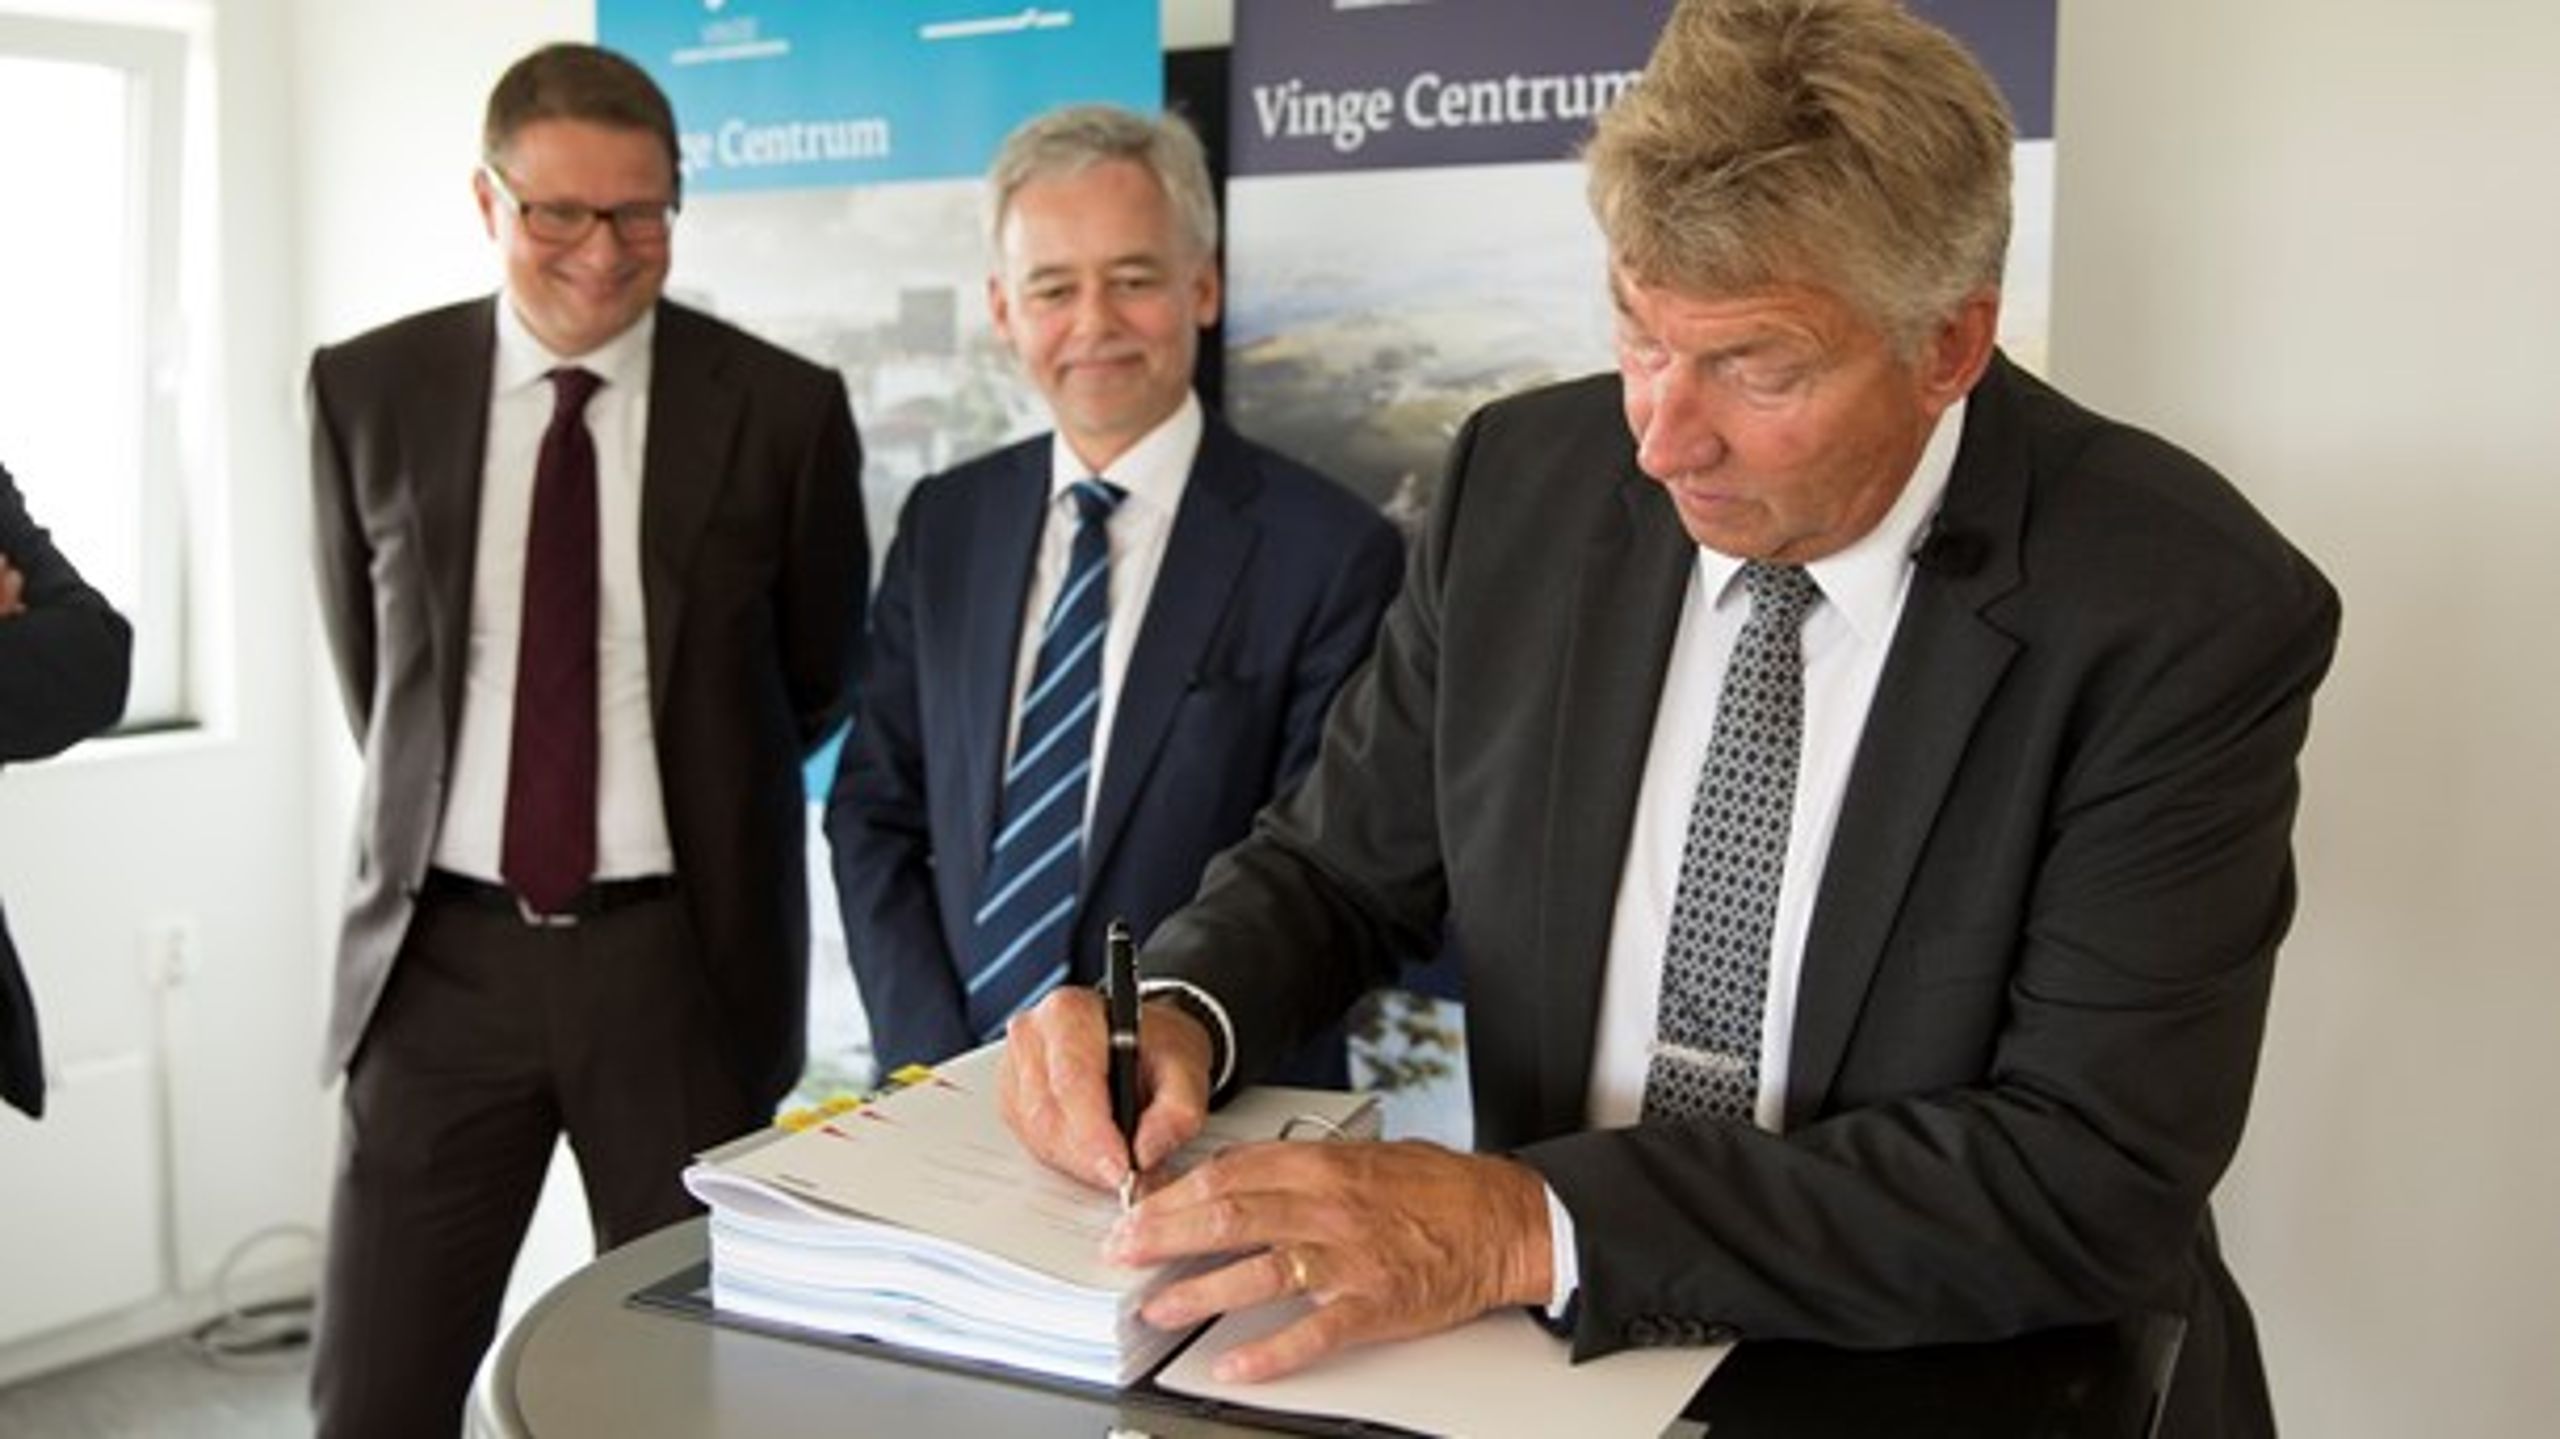 Frederikssunds borgmester, John Schmidt Andersen (V), skrev i juni under på kontrakten for udviklingen af VInge C, som skulle sikre kommunen indtægter for 163 millioner kroner allerede i 2017.<br>